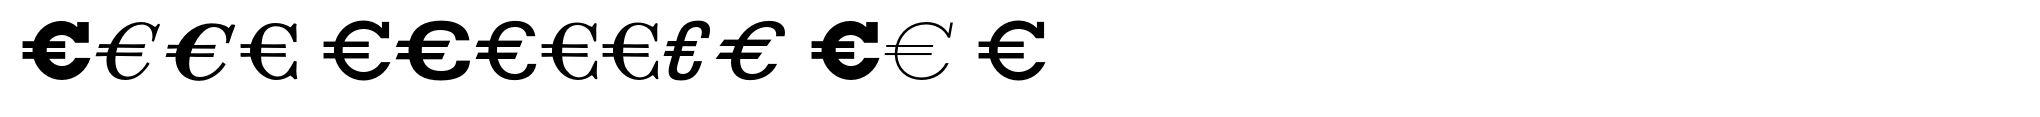 Euro Classic EF C image